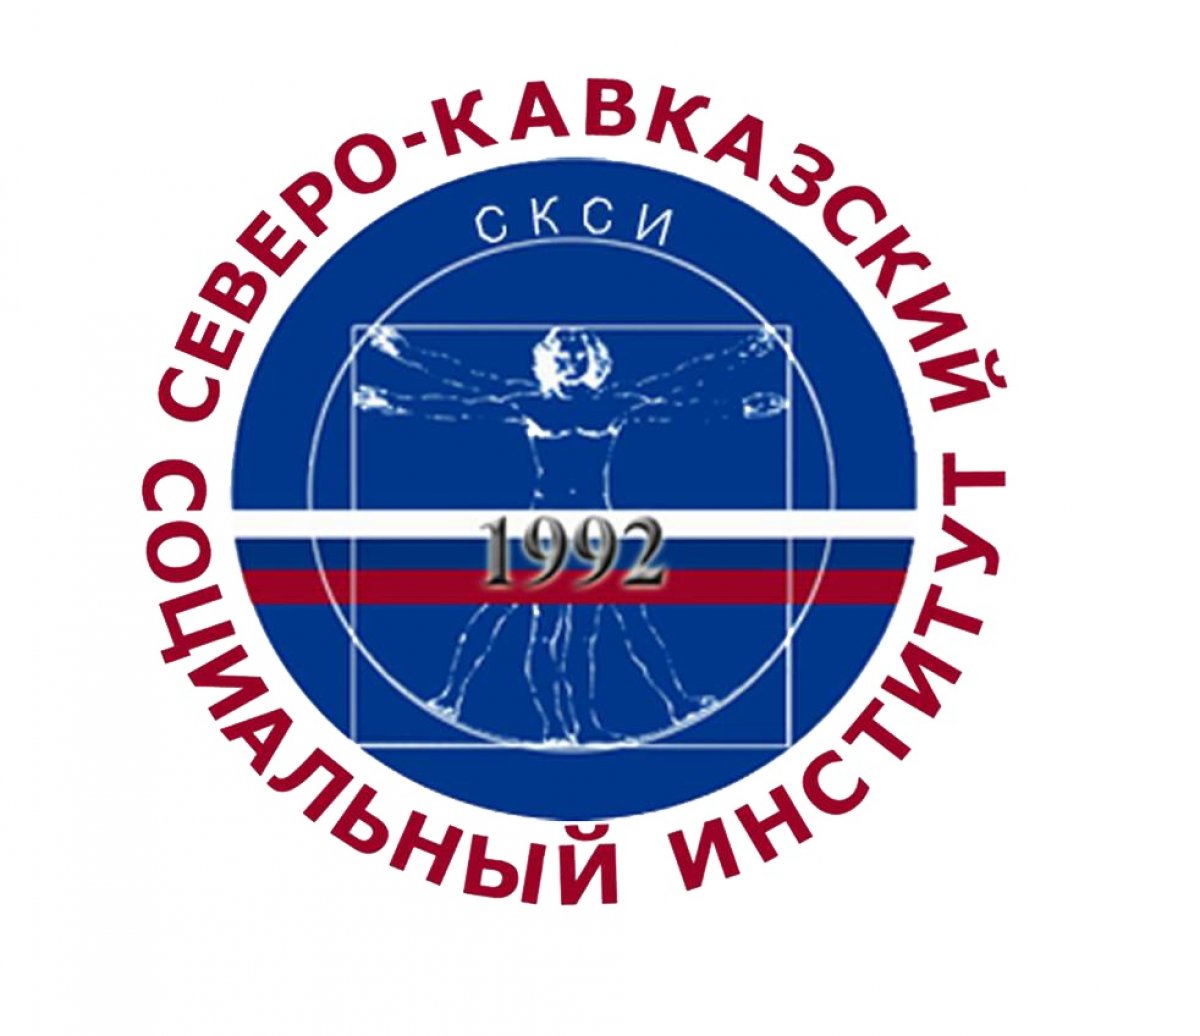 24 декабря 2019 года в 10.00 состоится общее собрание работников и обучающихся Северо-Кавказского социального института.